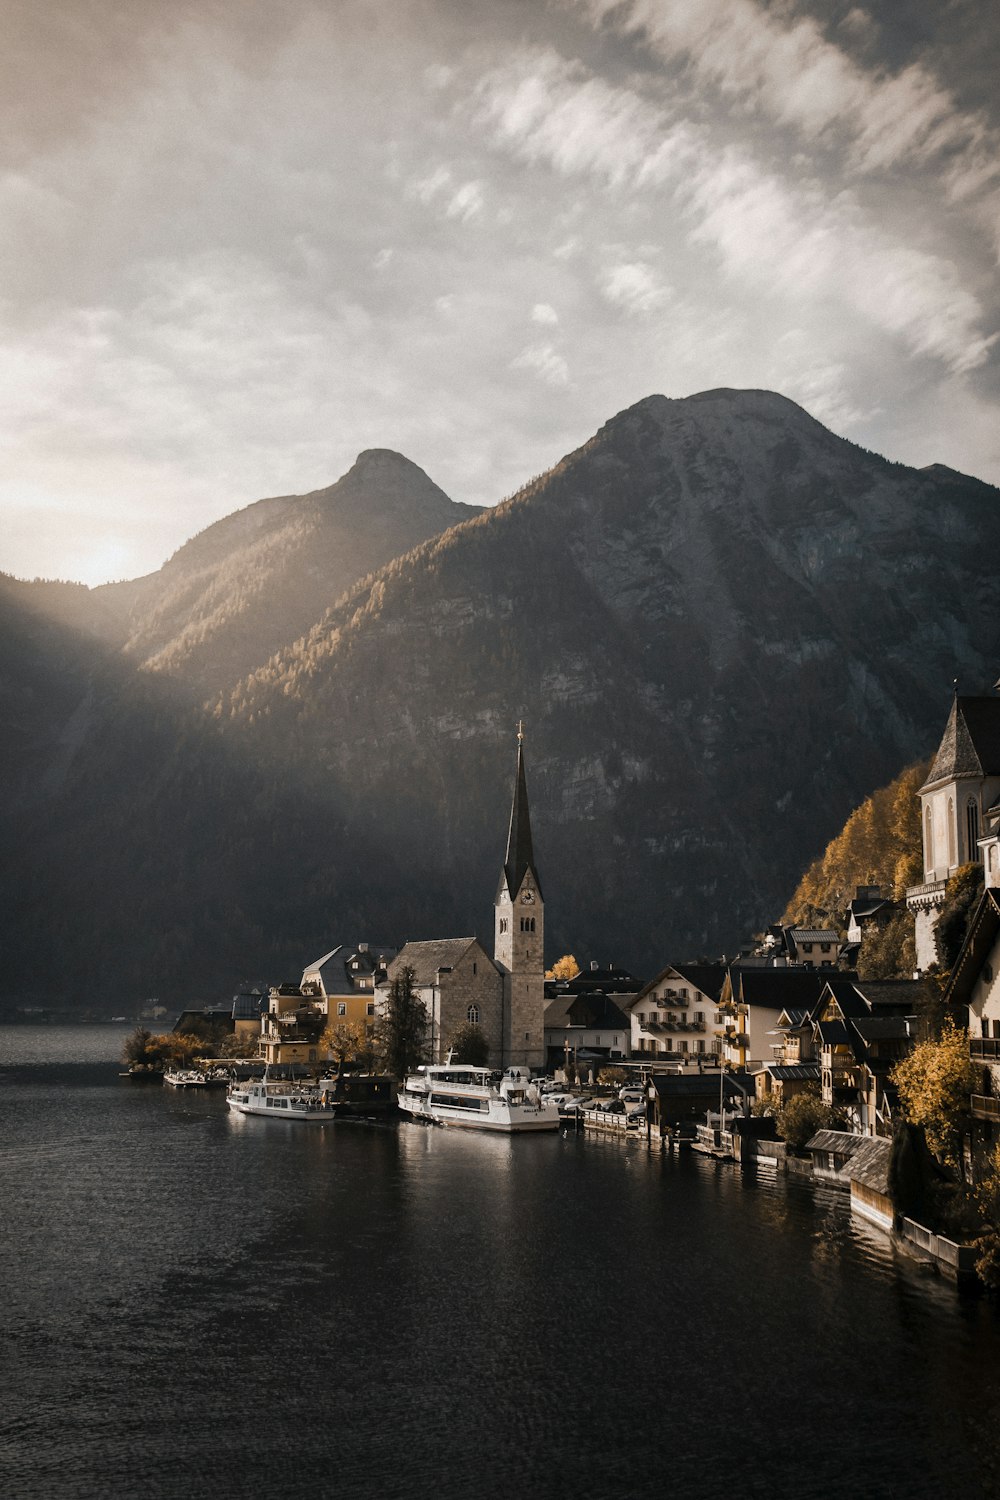 Una piccola città su un lago con le montagne sullo sfondo